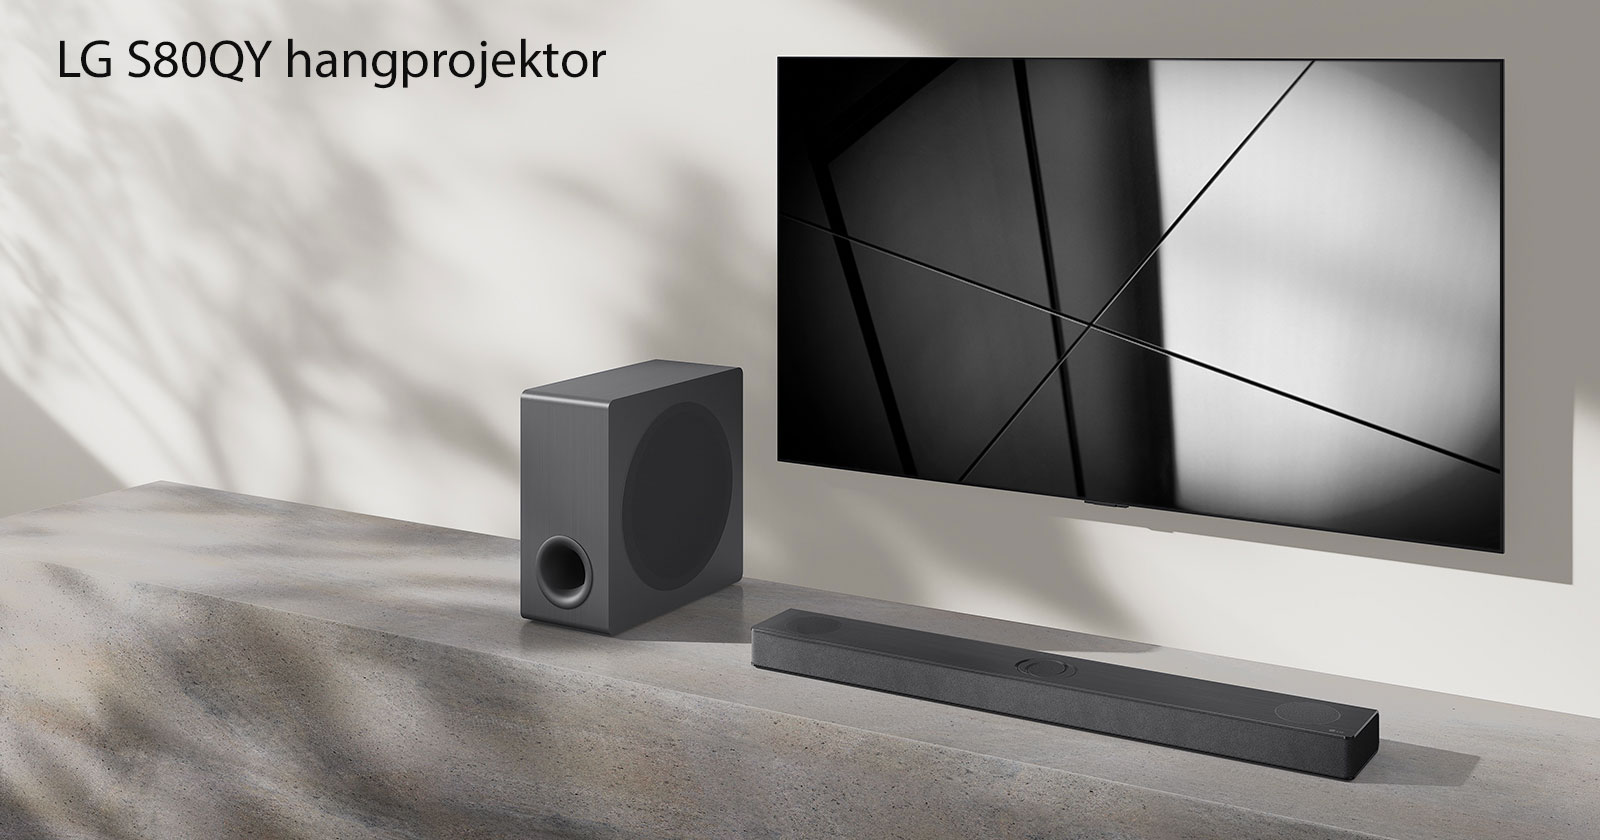 Egy LG S80QY hangprojektor és egy LG TV együtt egy nappaliban. A TV be van kapcsolva, és egy fekete-fehér kép látható rajta.